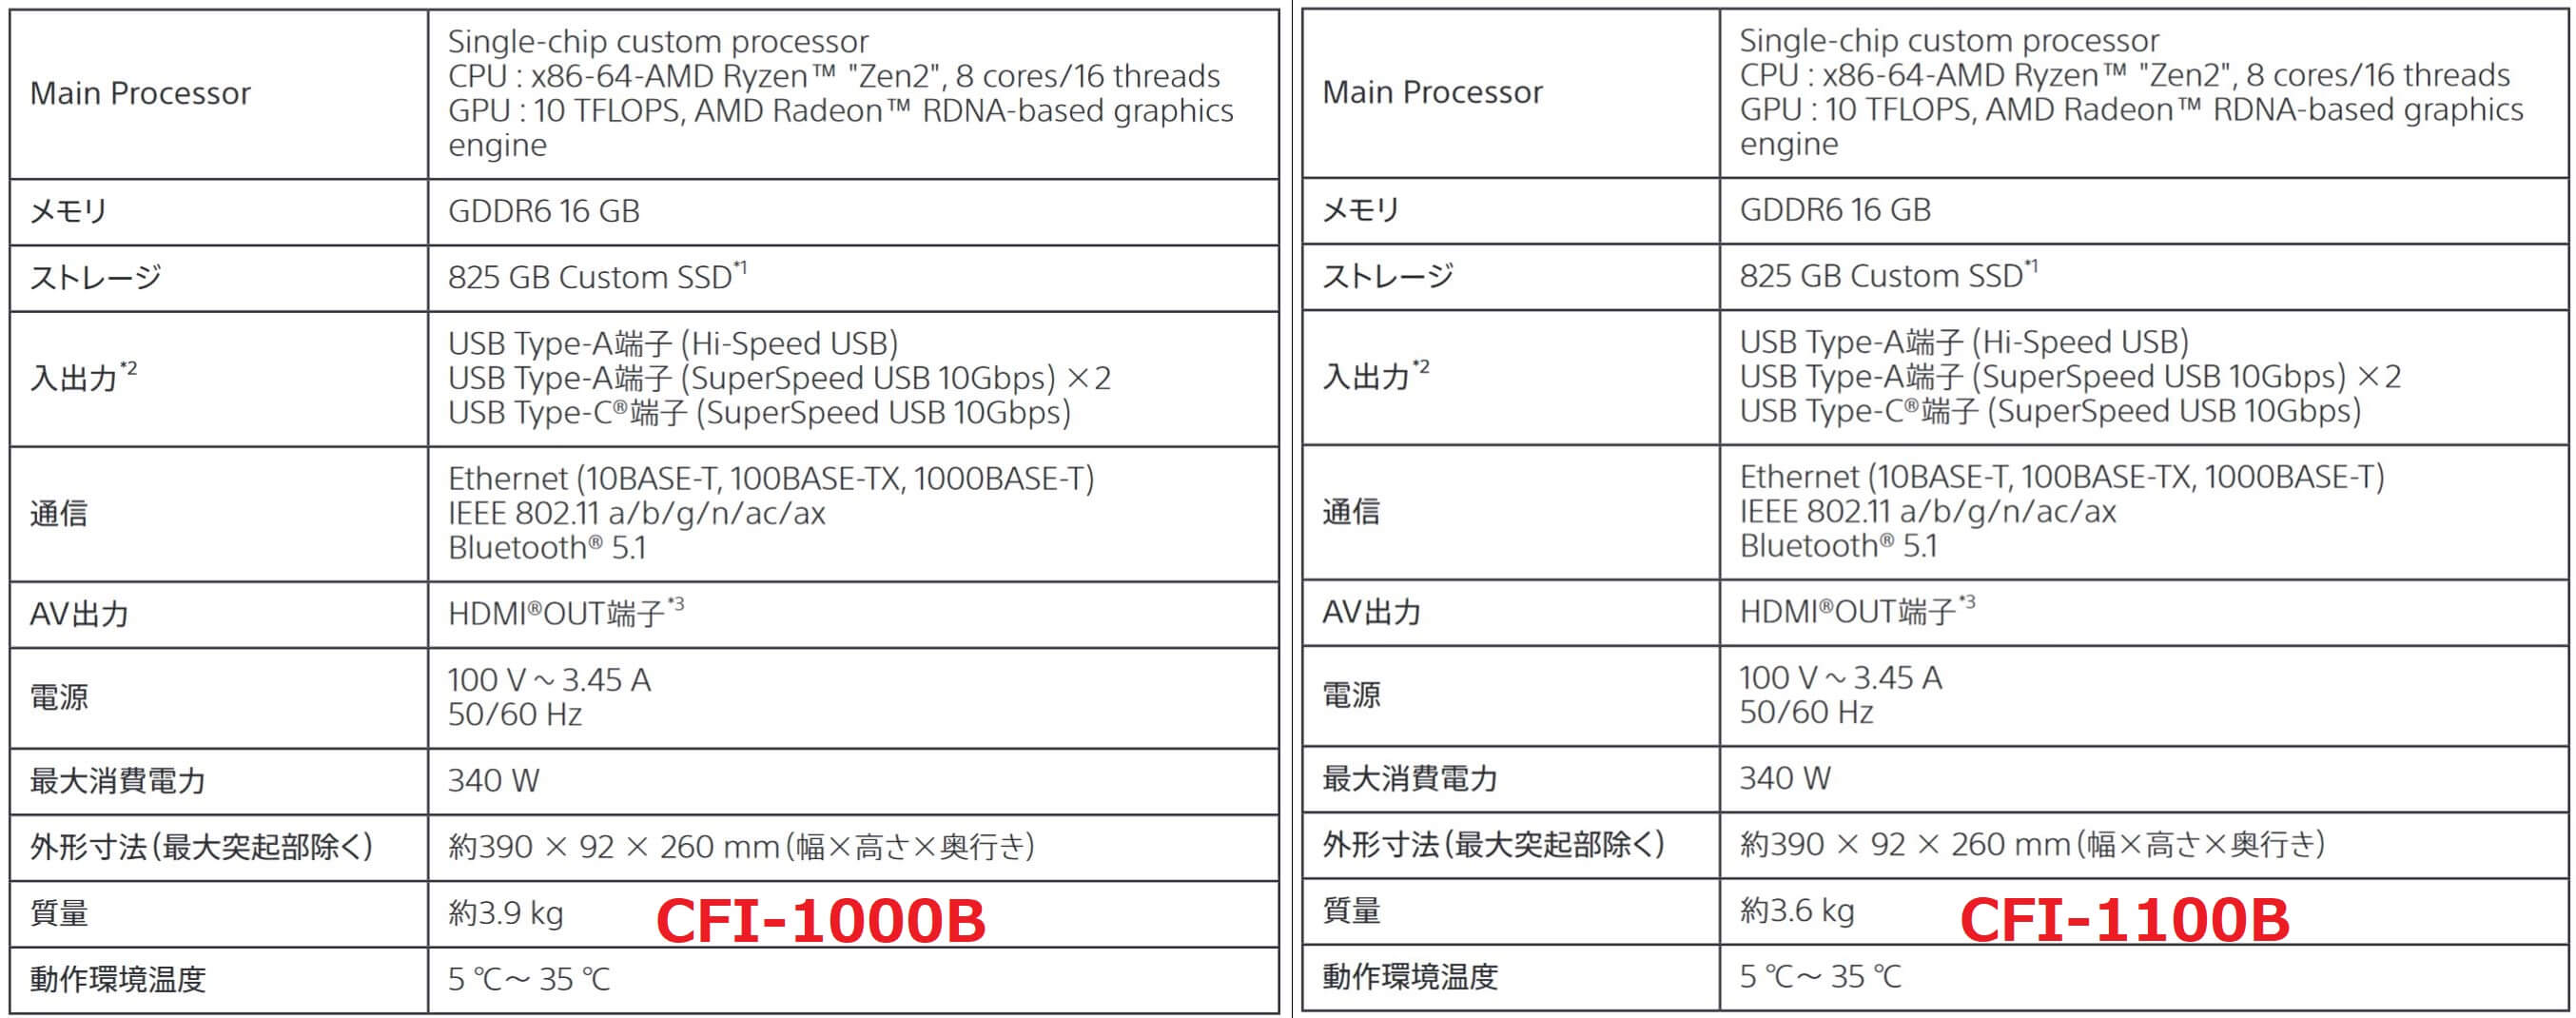 PS5 CFI-1100B